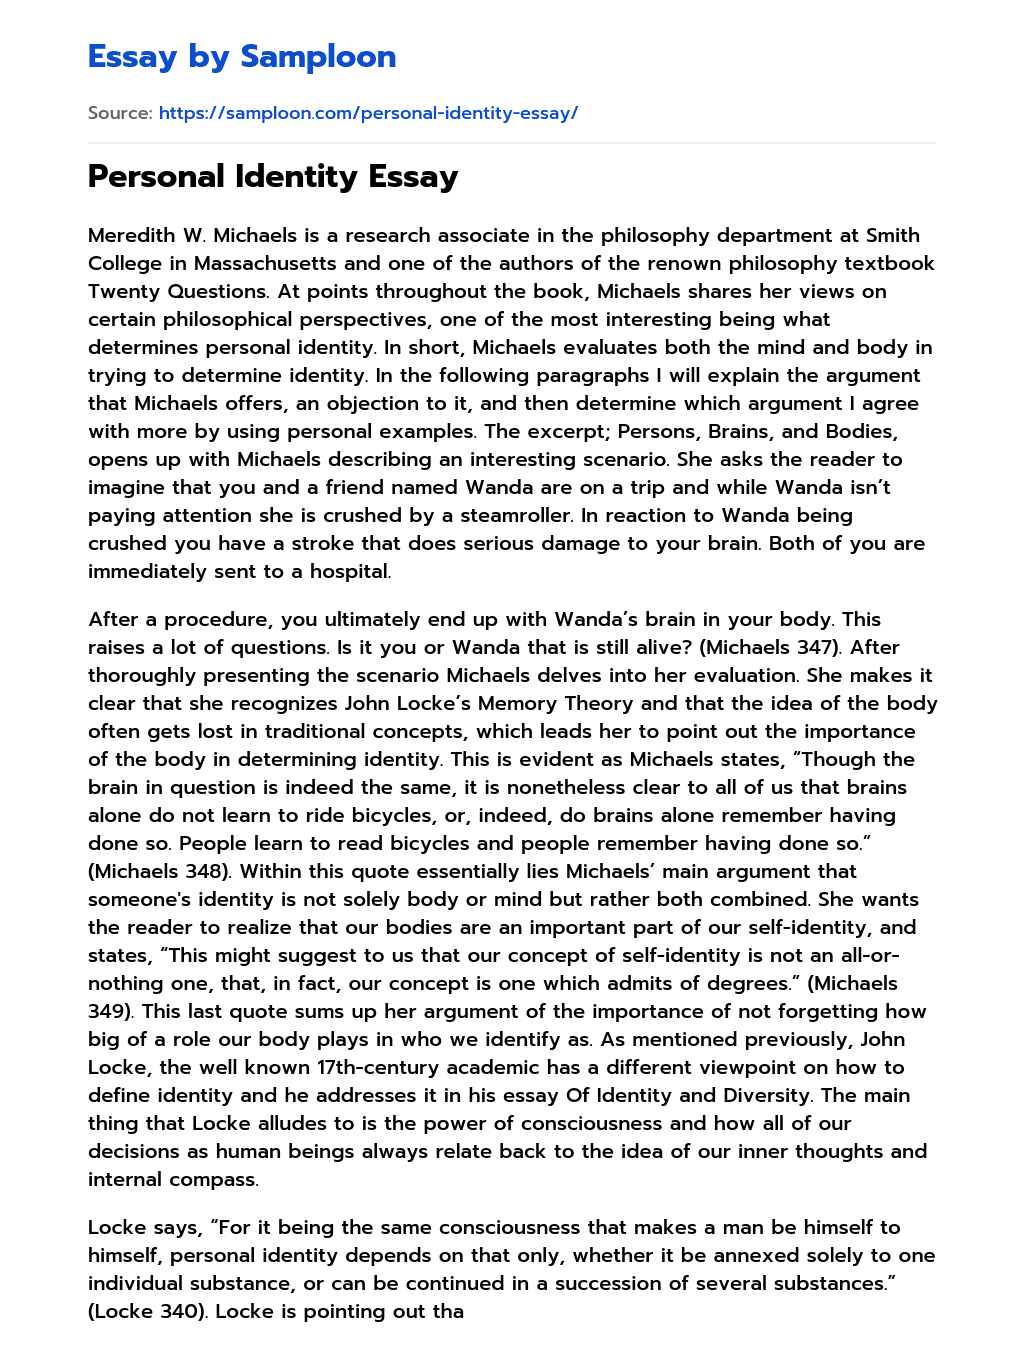 the namesake essay on identity